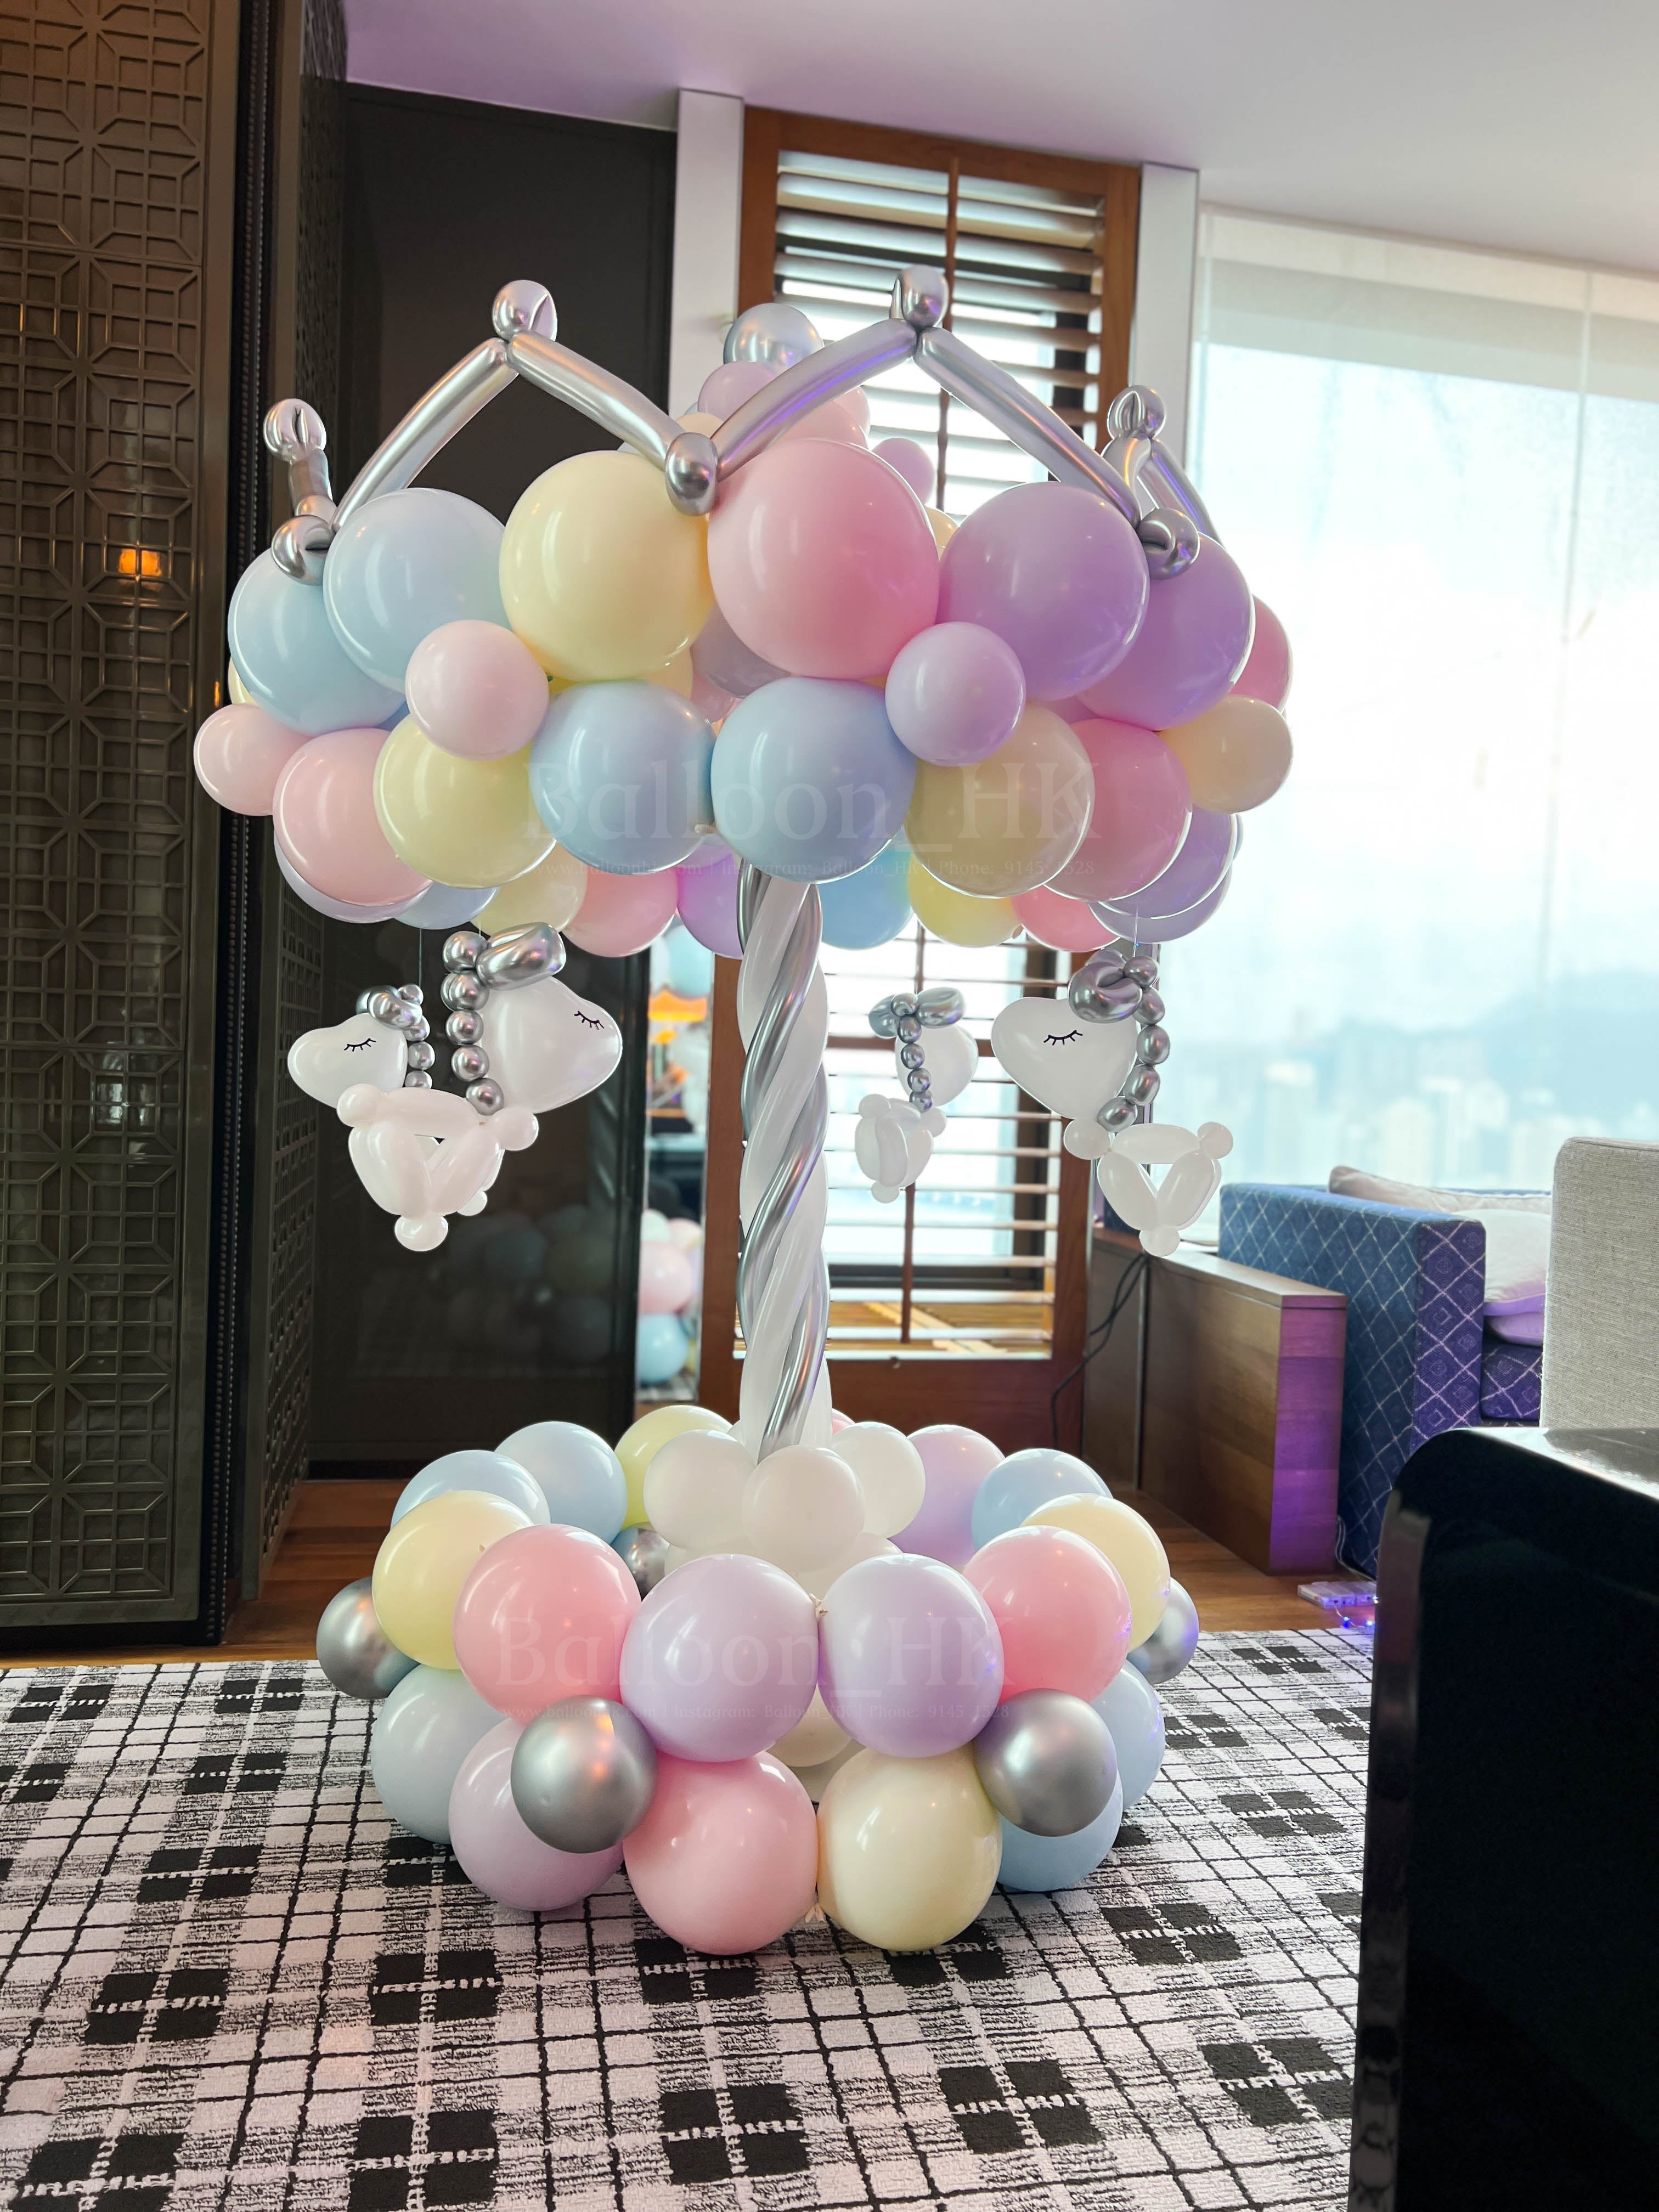 馬卡龍 - 旋轉木馬氣球 - Carousel Balloon (7日預訂)